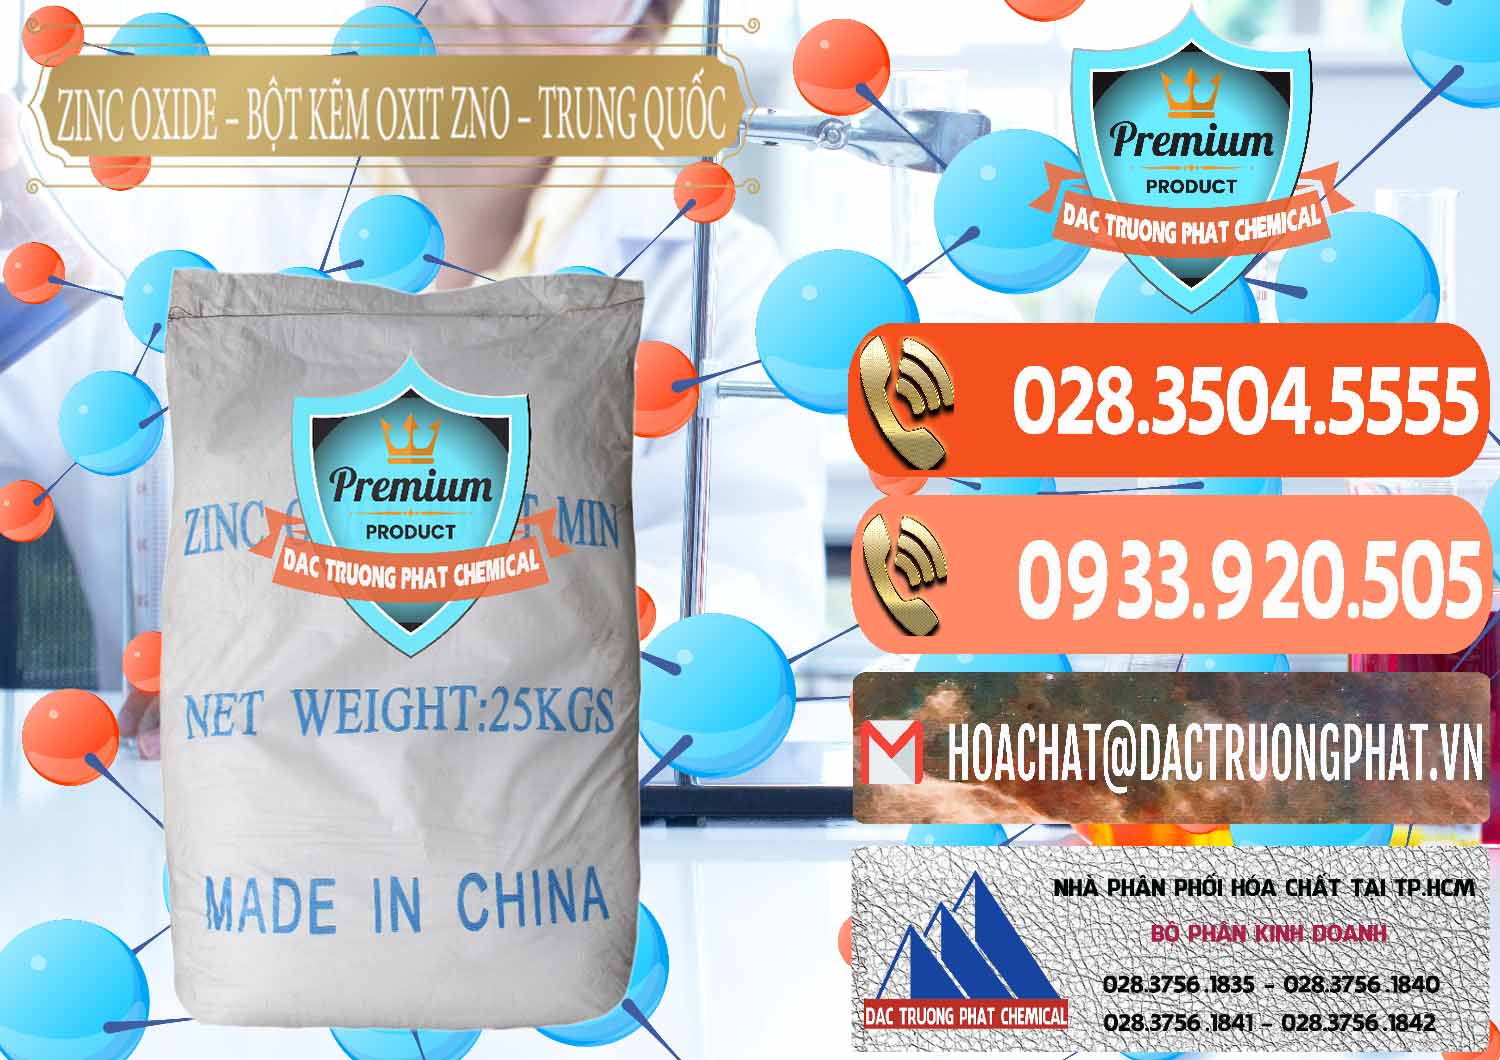 Nhà cung ứng & bán Zinc Oxide - Bột Kẽm Oxit ZNO Trung Quốc China - 0182 - Chuyên cung cấp & phân phối hóa chất tại TP.HCM - hoachatmientay.com